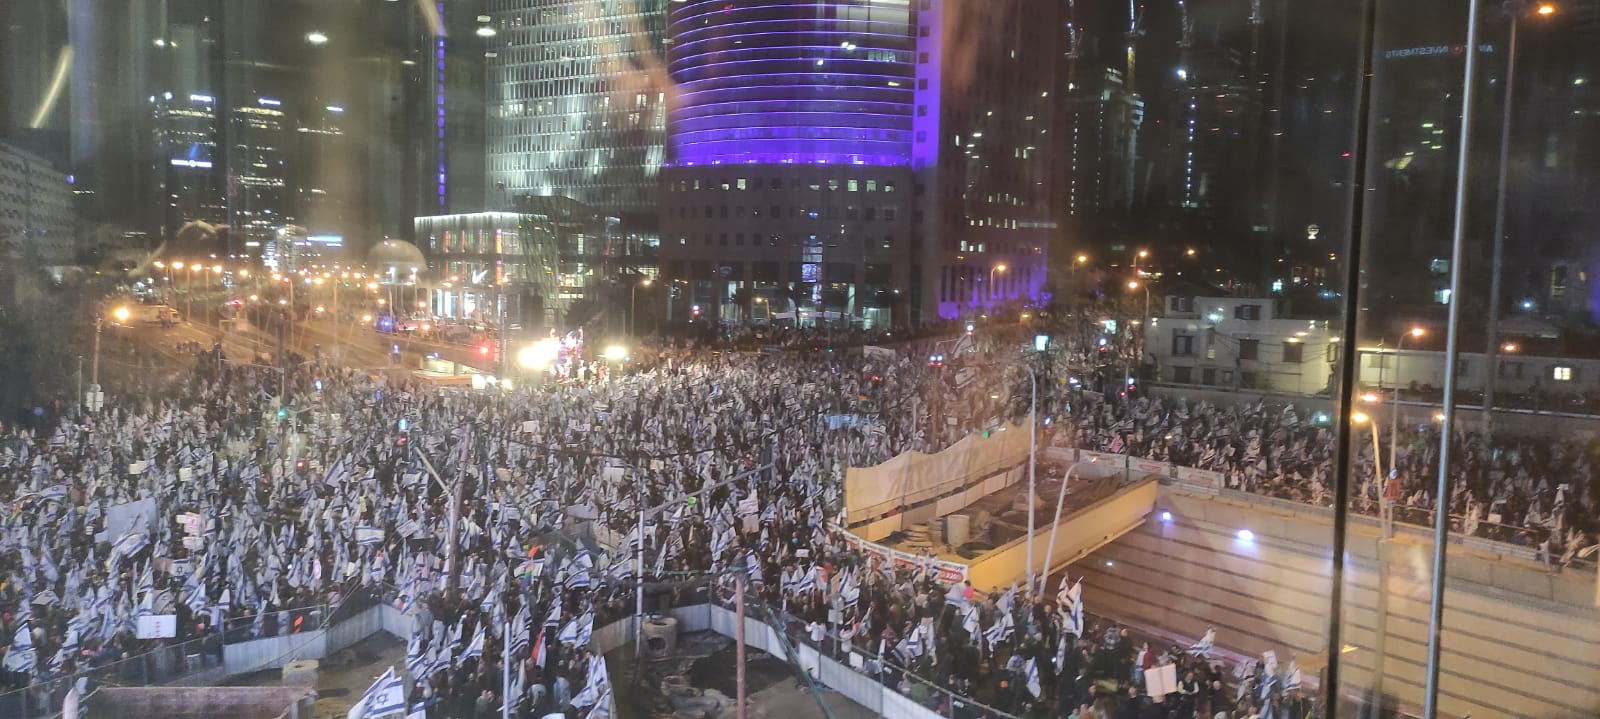 רבבות מפגינים חוסמים את התנועה בהפגנה נגד הרפורמה המשפטית ברחוב קפלן בתל אביב (צילום: ניצן צבי כהן)